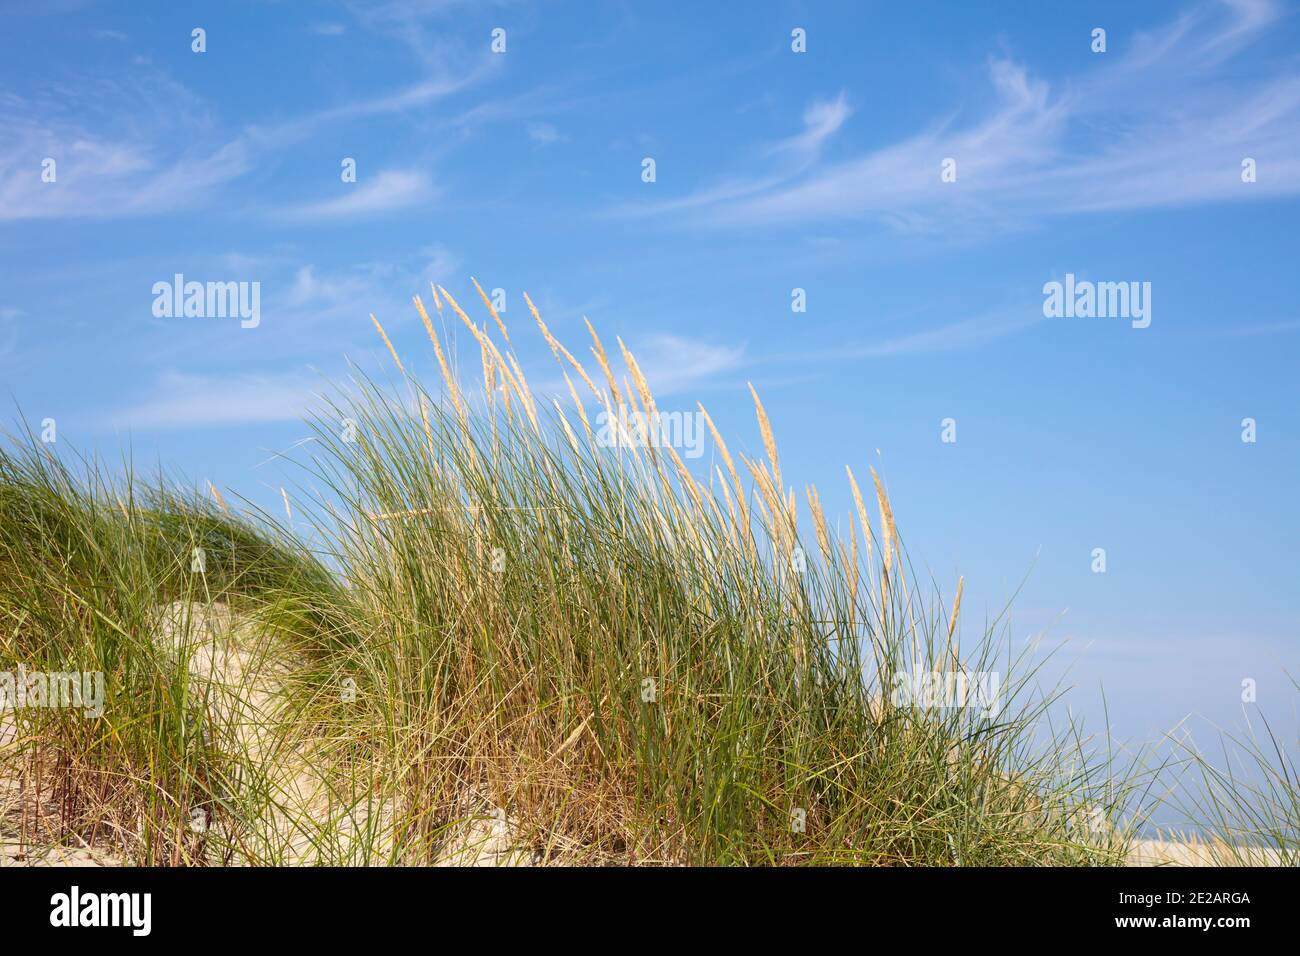 Strandgras im Nationalpark, UNESCO-Weltnaturarbe Wattenmeer, Borkum, Ostfriesische Insel, Niedersachsen, Deutschland, Europa Banque D'Images